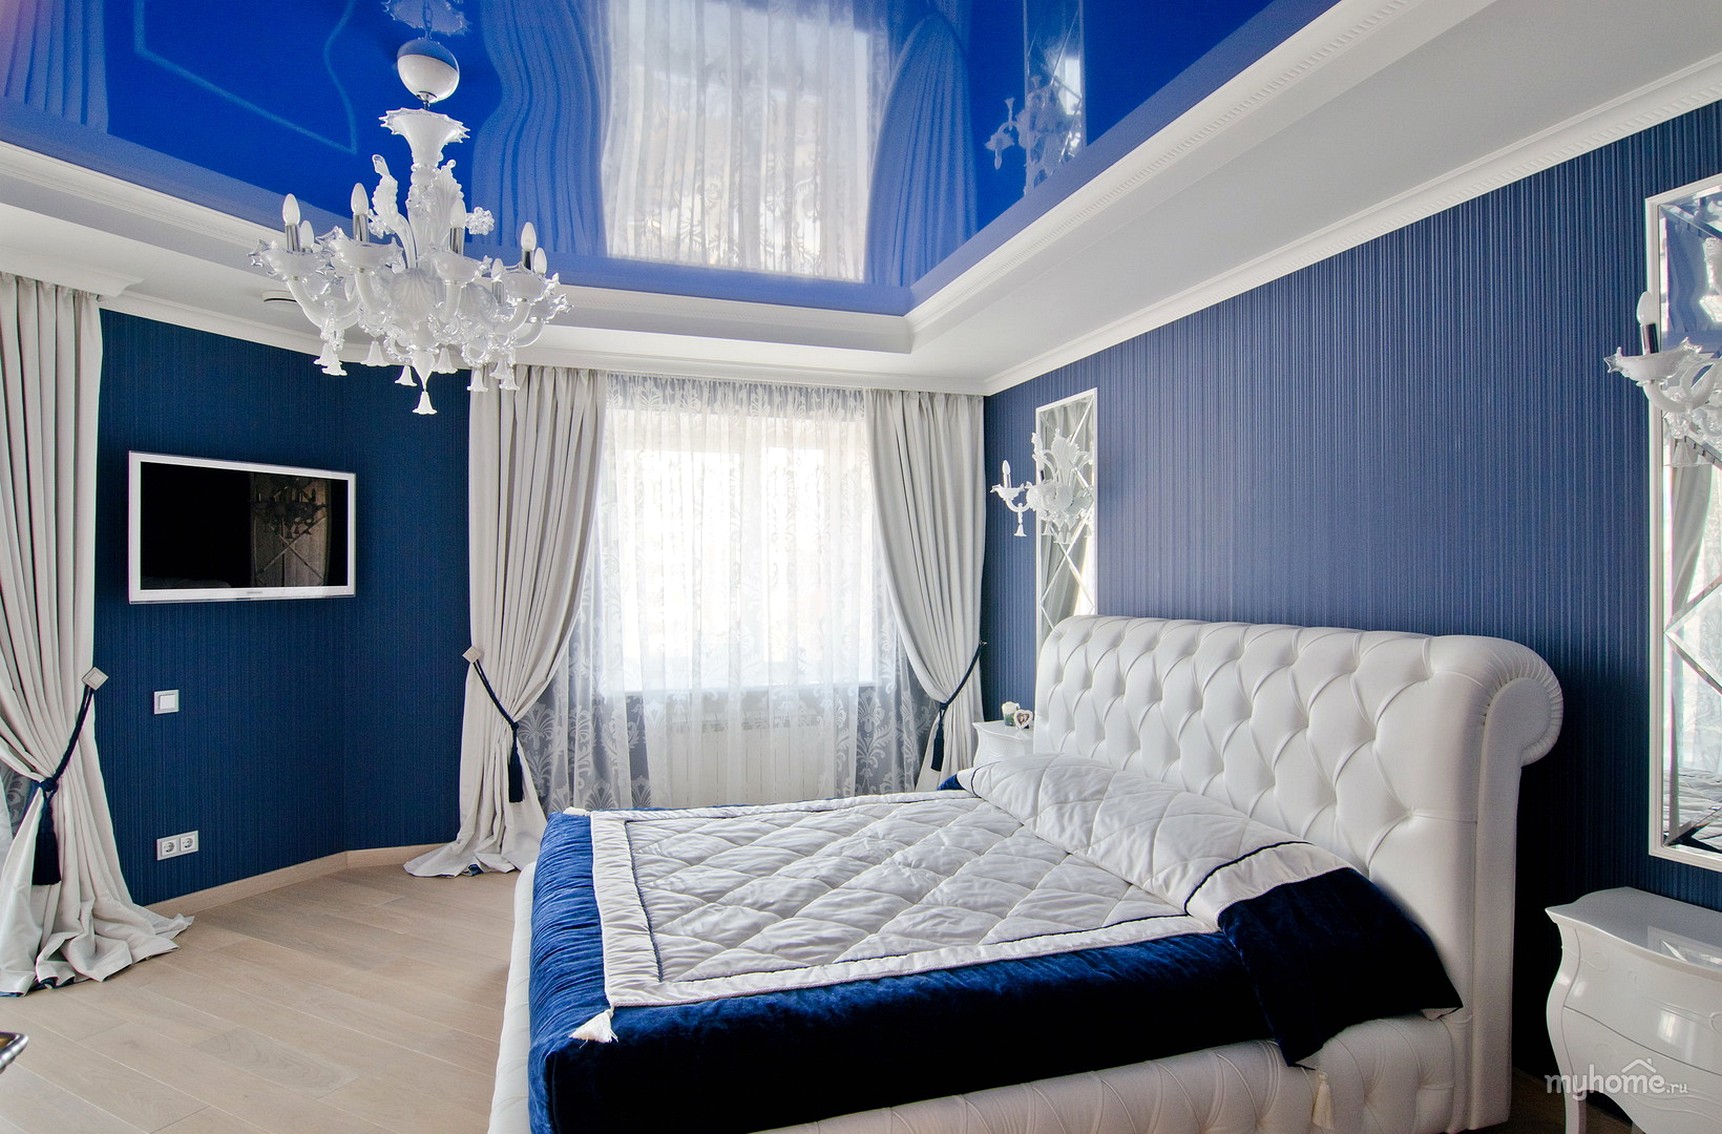 Обои в спальню синие » Картинки и фотографии дизайна квартир, домов .